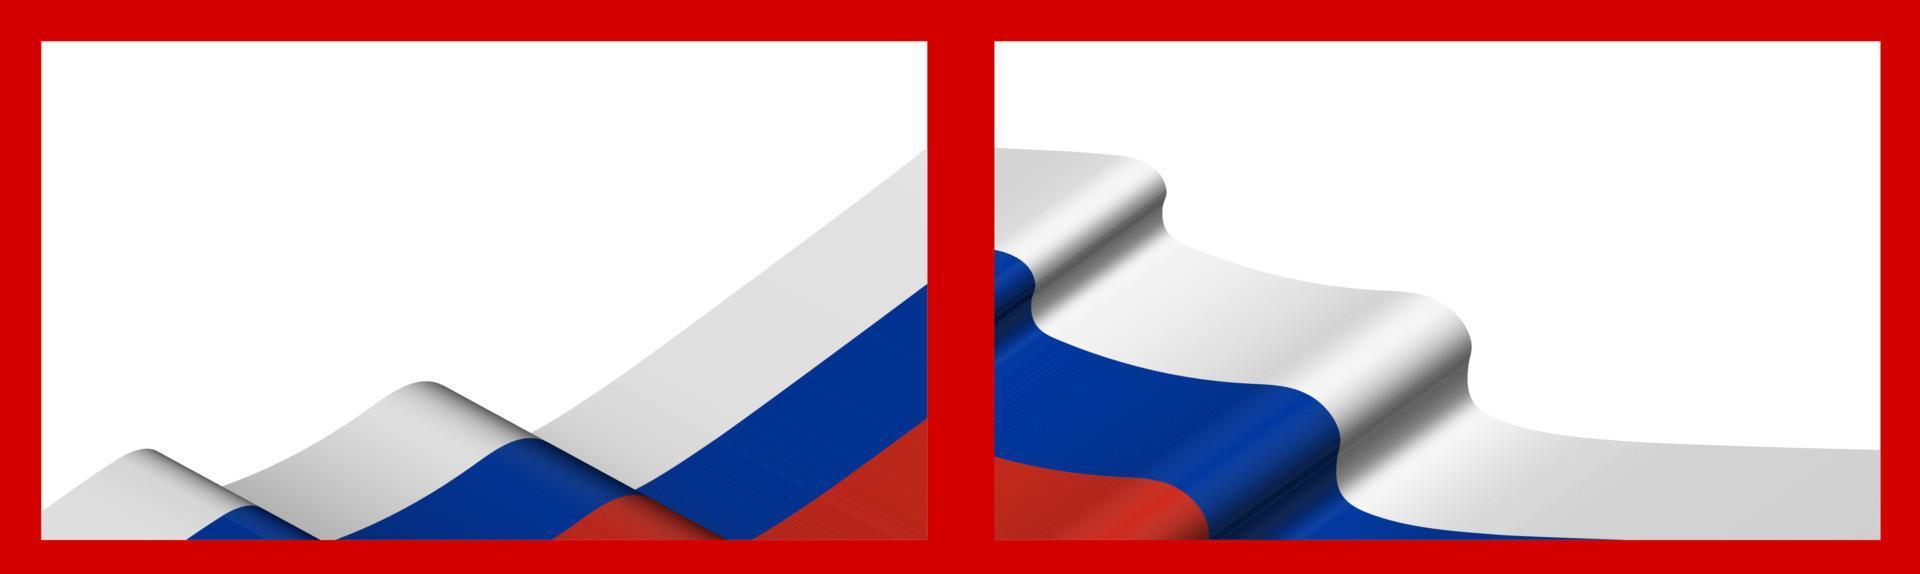 sfondo, modello per il design festivo. bandiera russa che sventola nel vento. vettore realistico su sfondo rosso